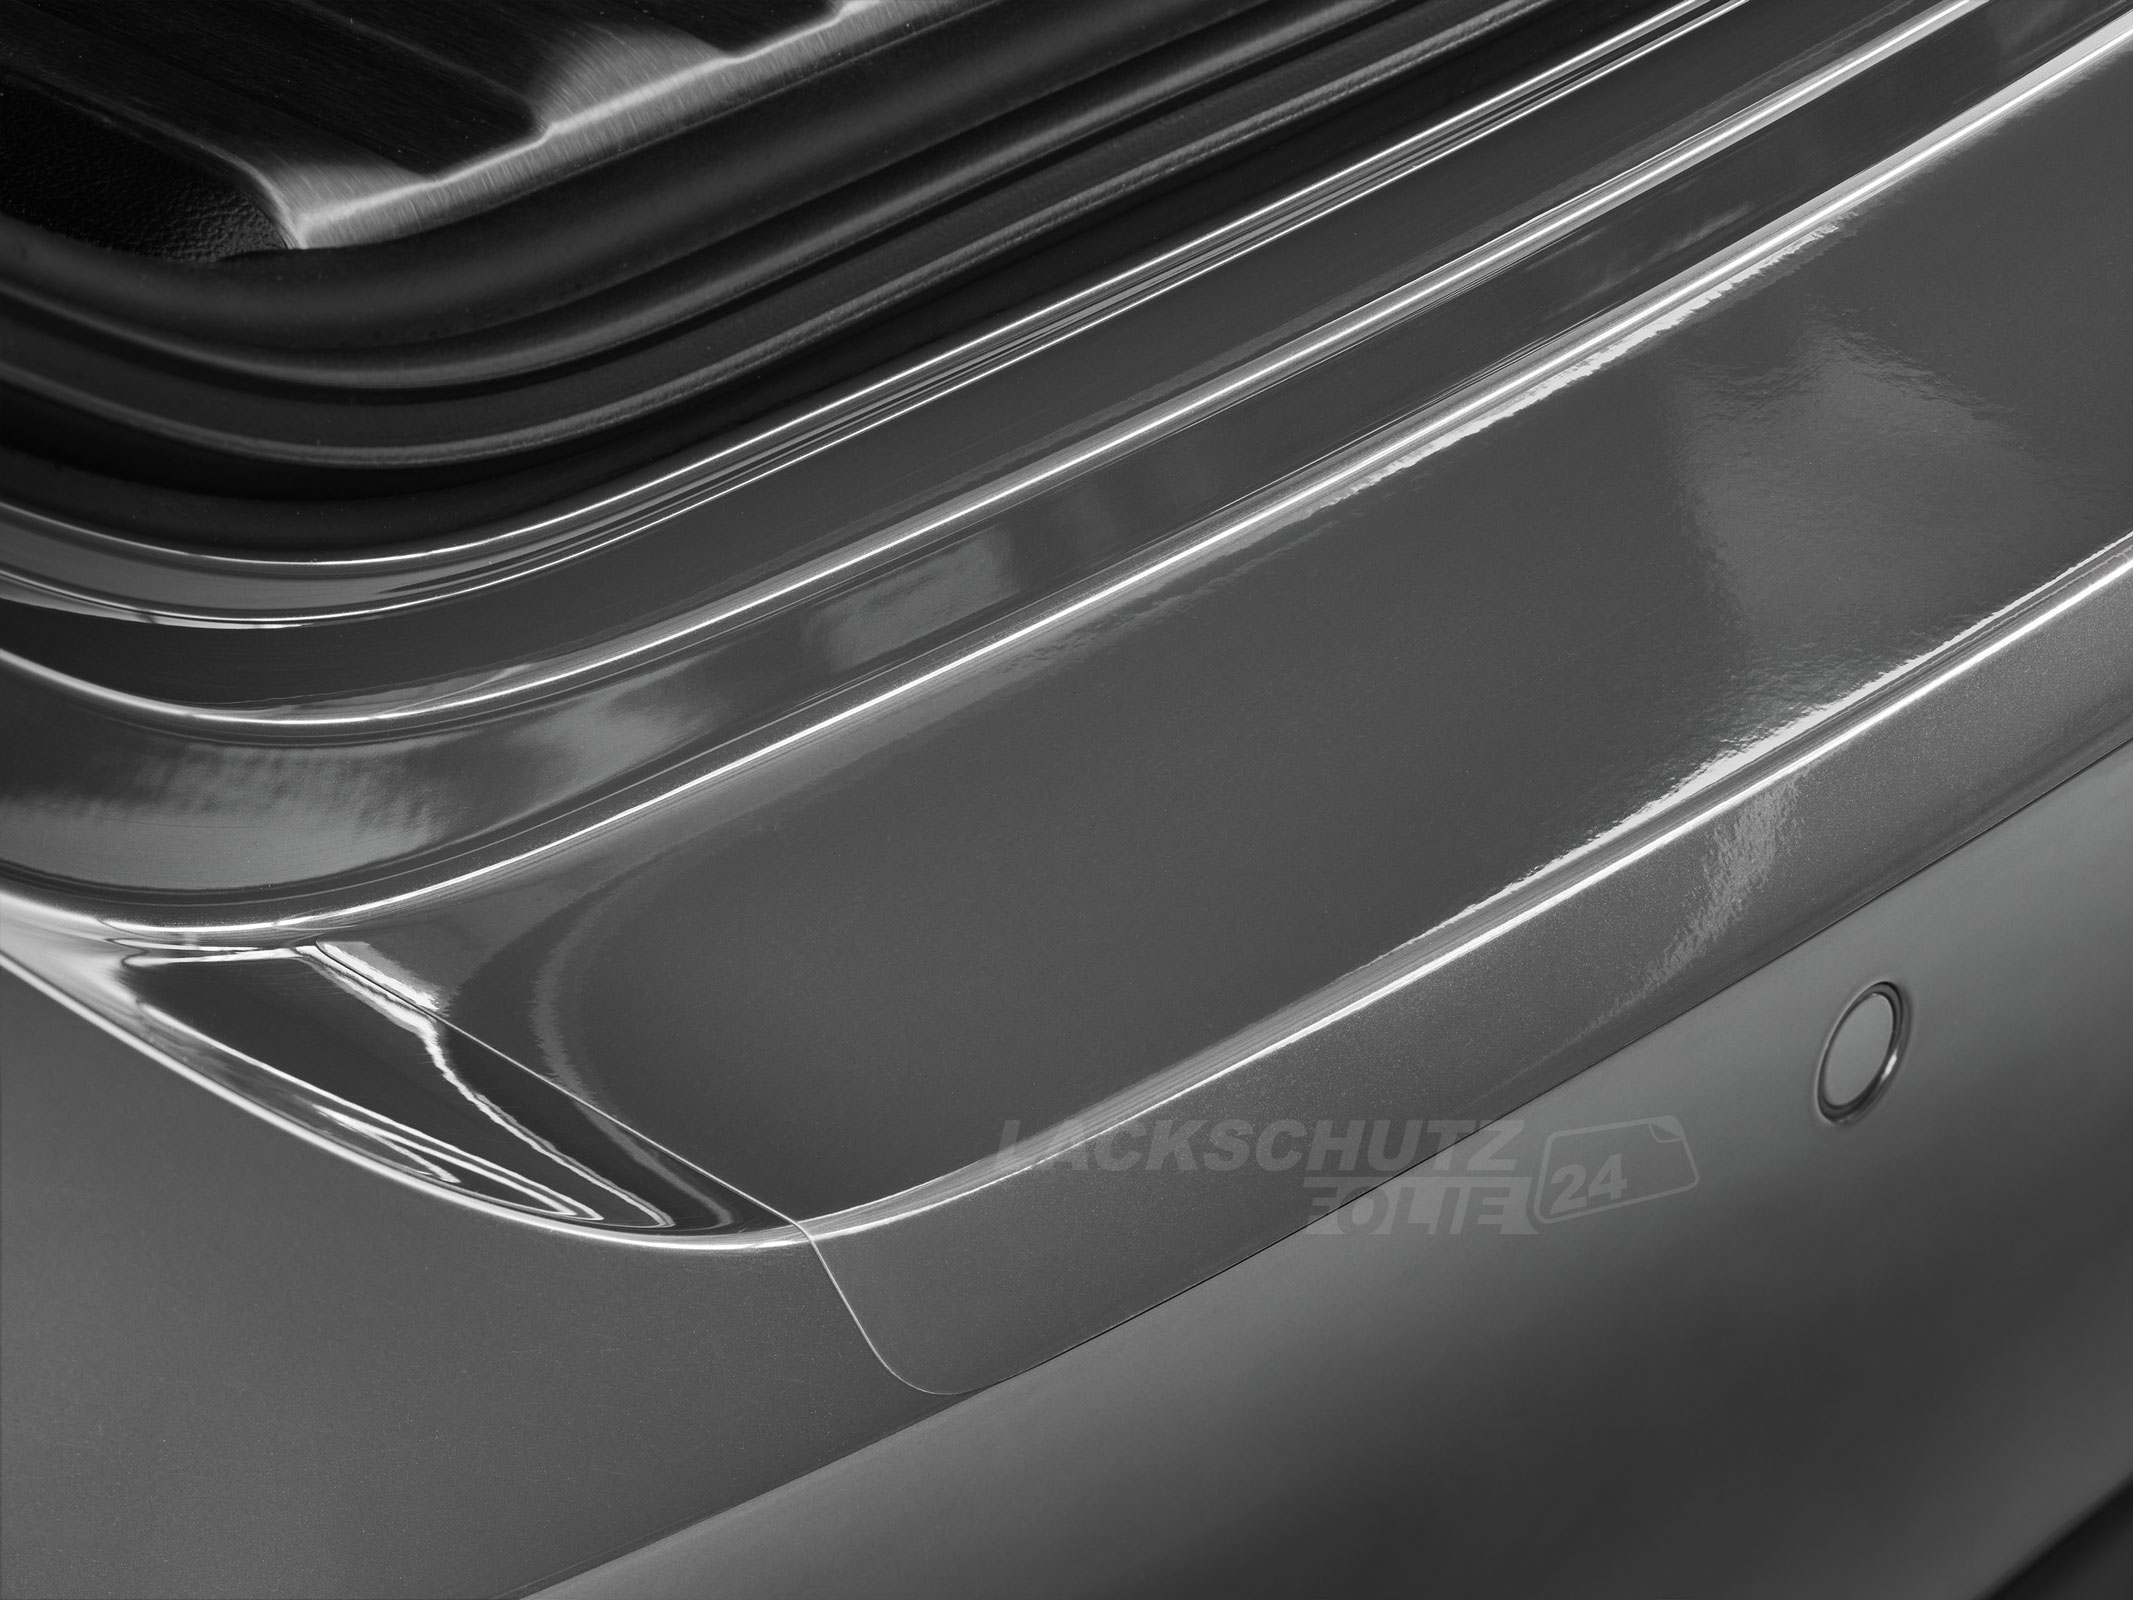 Ladekantenschutzfolie - Transparent Glatt Hochglänzend 240 µm stark für Mazda 6 Sport (II) Typ GH, BJ 03/2008-2012